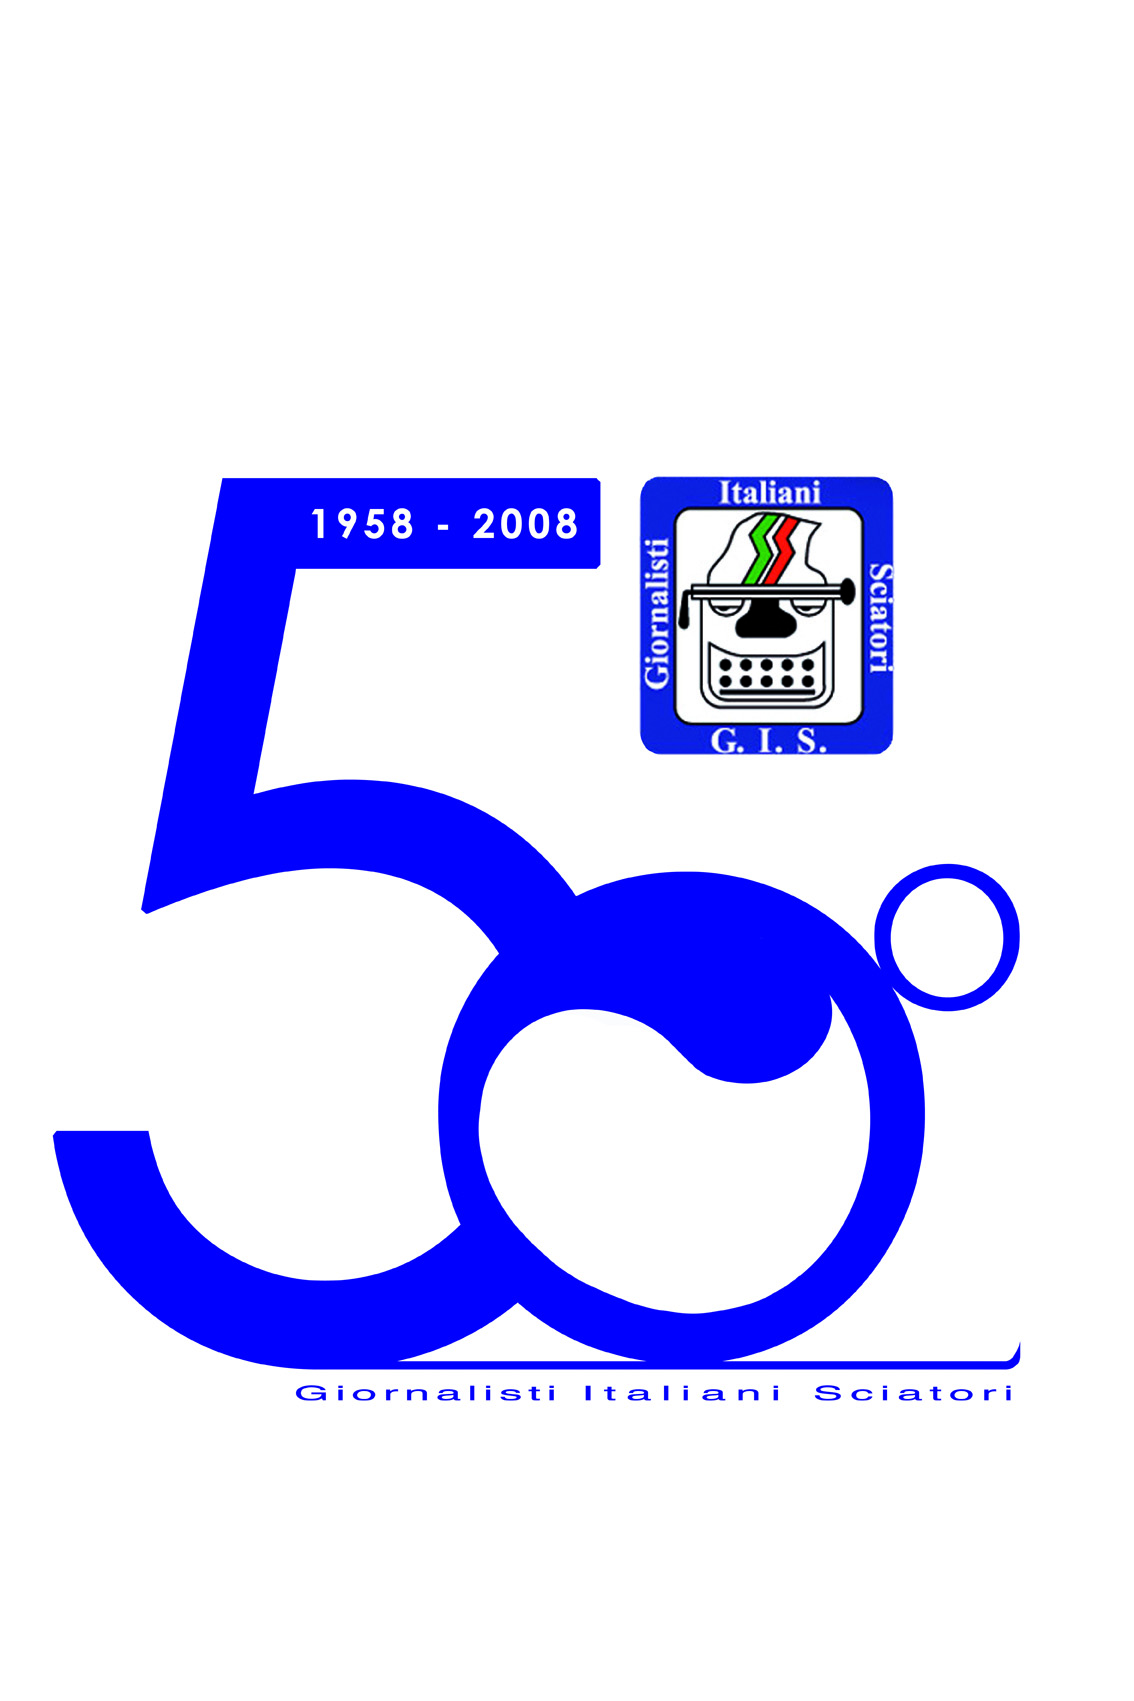 032_logo_GIS_masman